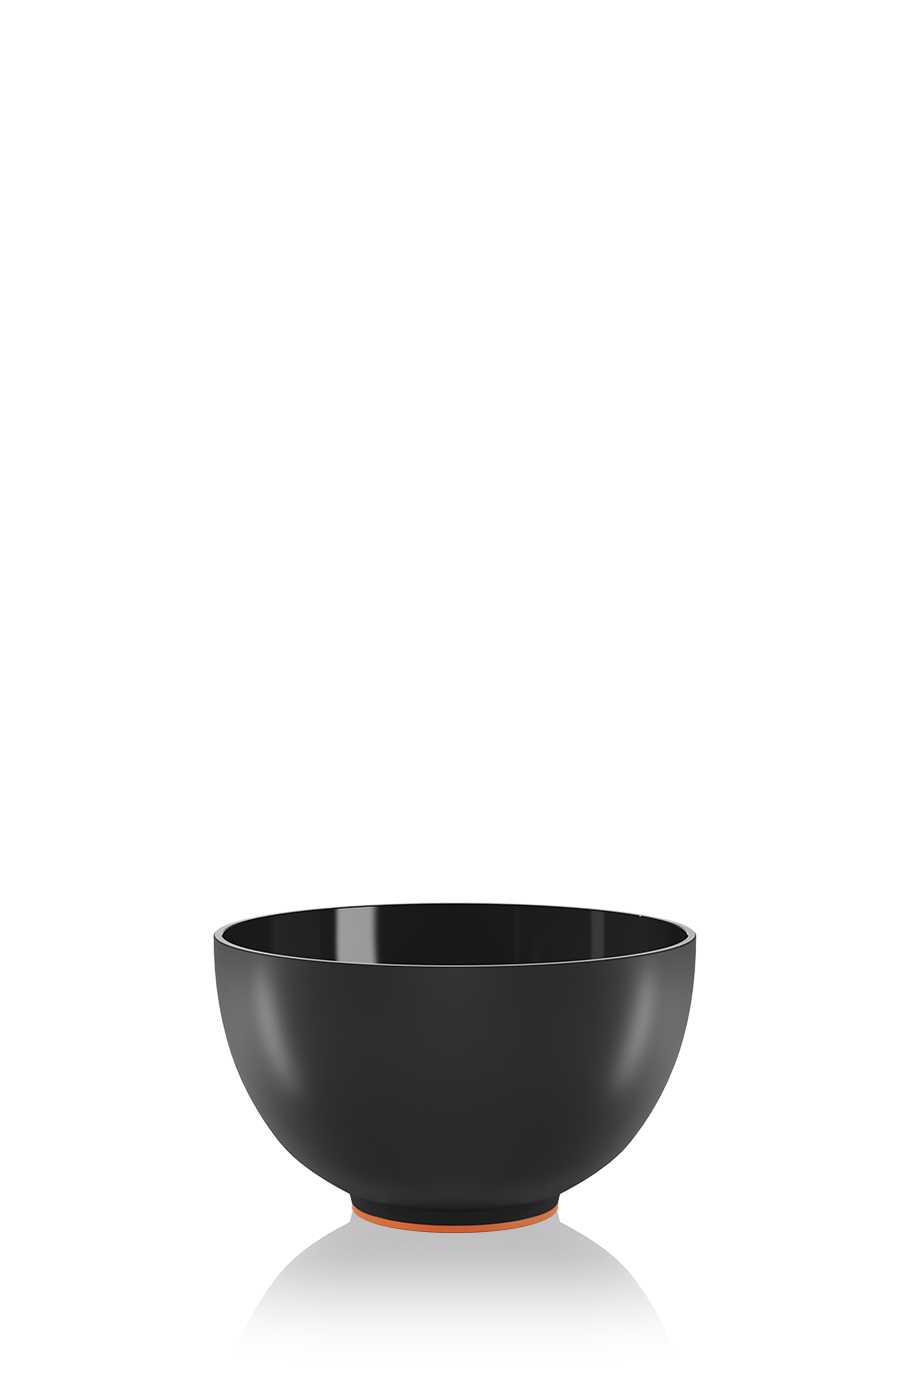 Набор M Assistant: стол Черный, чаша Черная, чаша Фиолетовая, держатель Синий в интернет-магазине Authentica.love